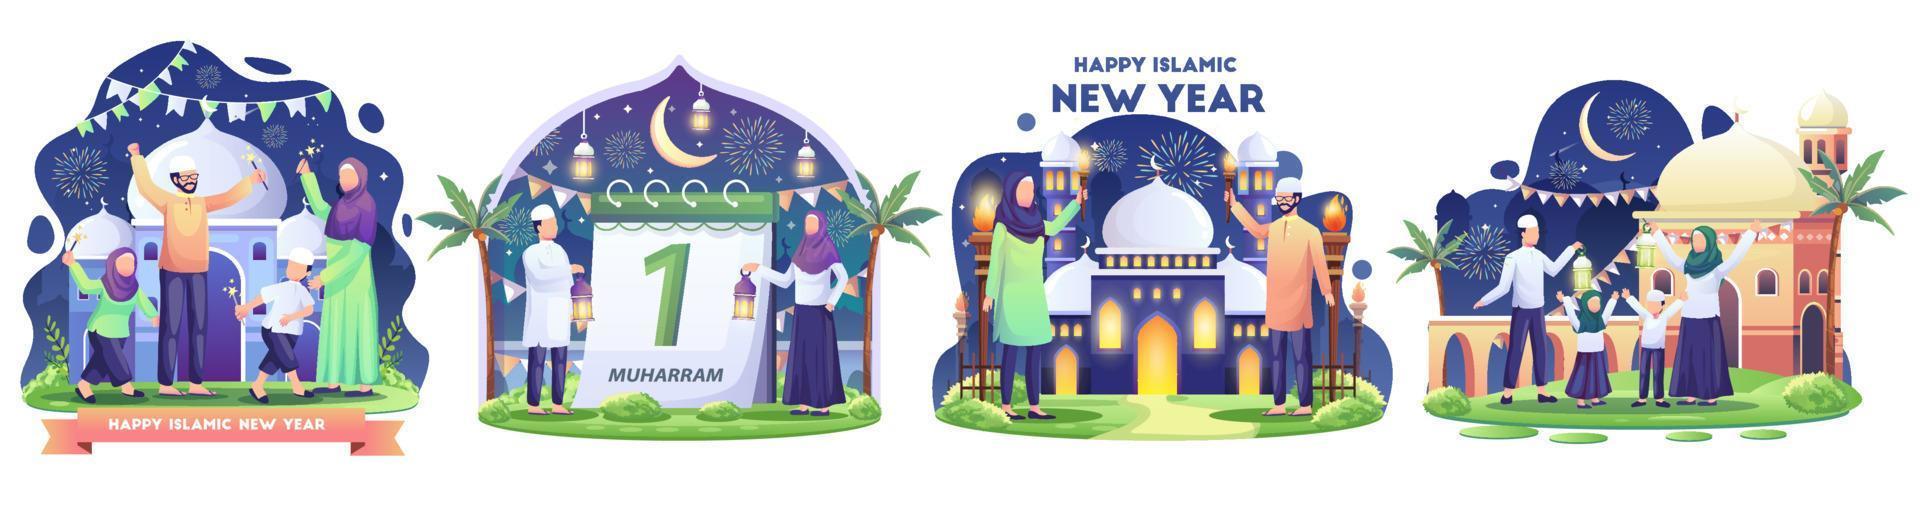 grupo de familias musulmanas celebrando el año nuevo islámico con el festival de antorchas. ilustración vectorial de estilo plano vector